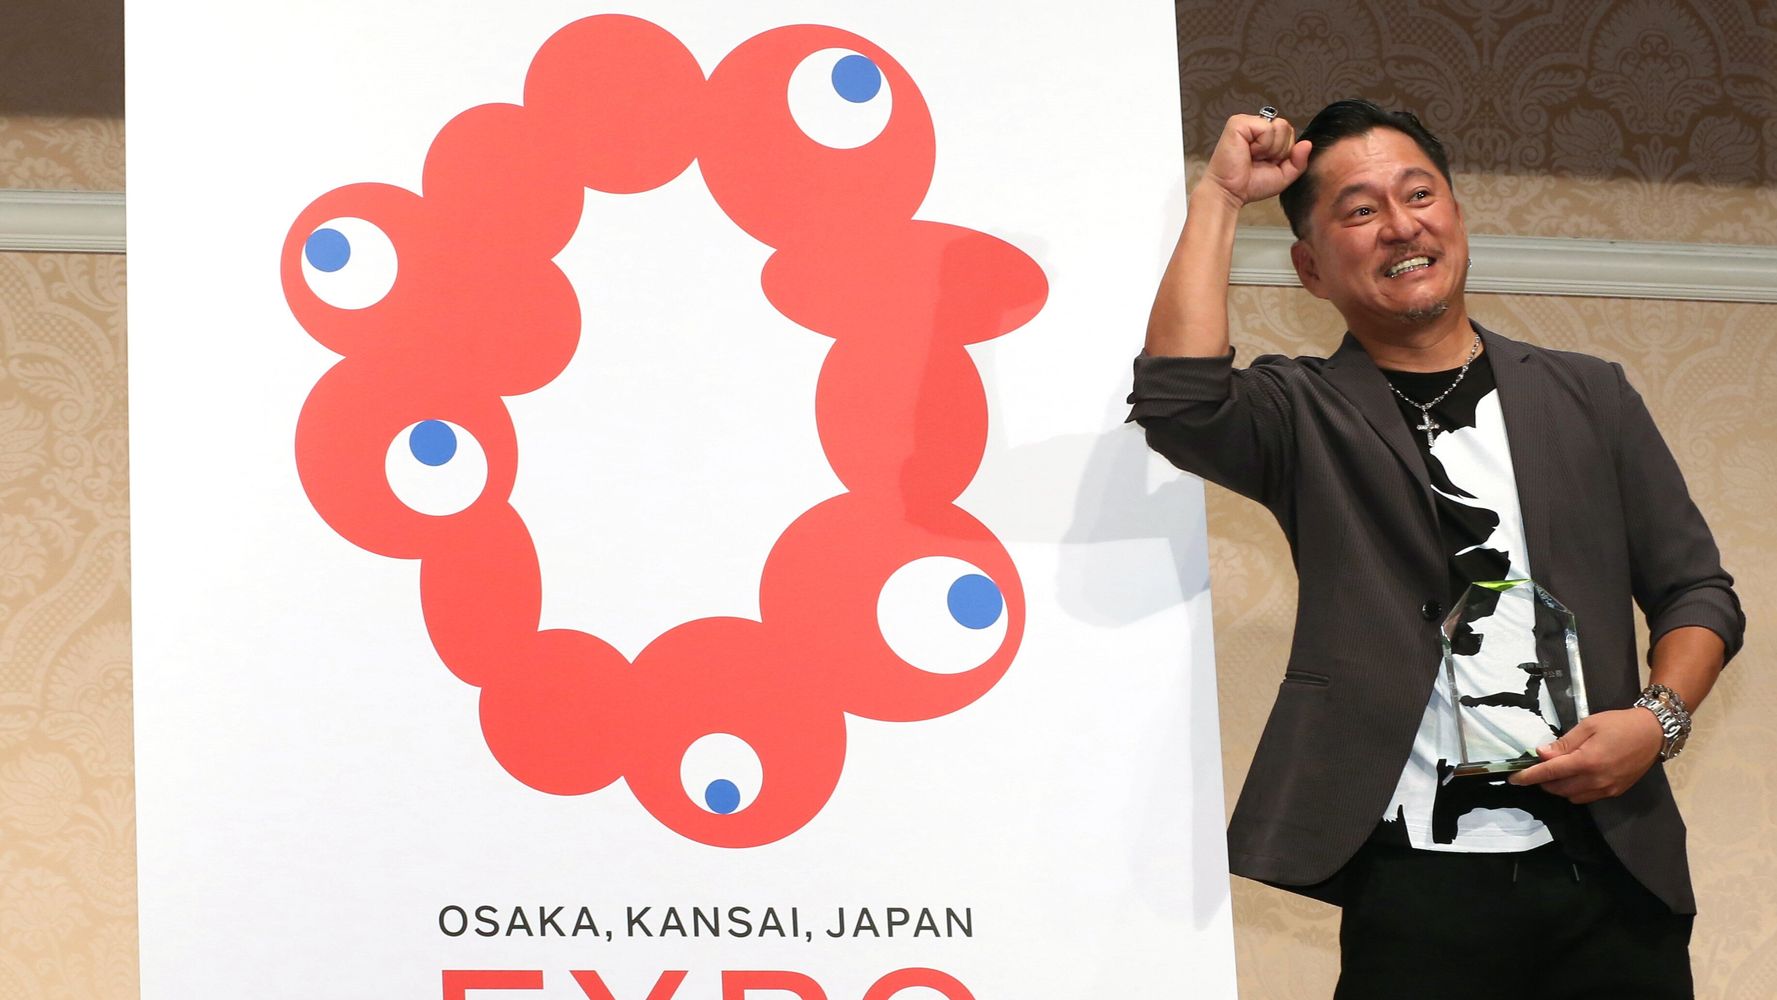 コロシテくん と命名される 大阪 関西万博ロゴ 好評すぎてネット民の素材になってしまう ハフポスト